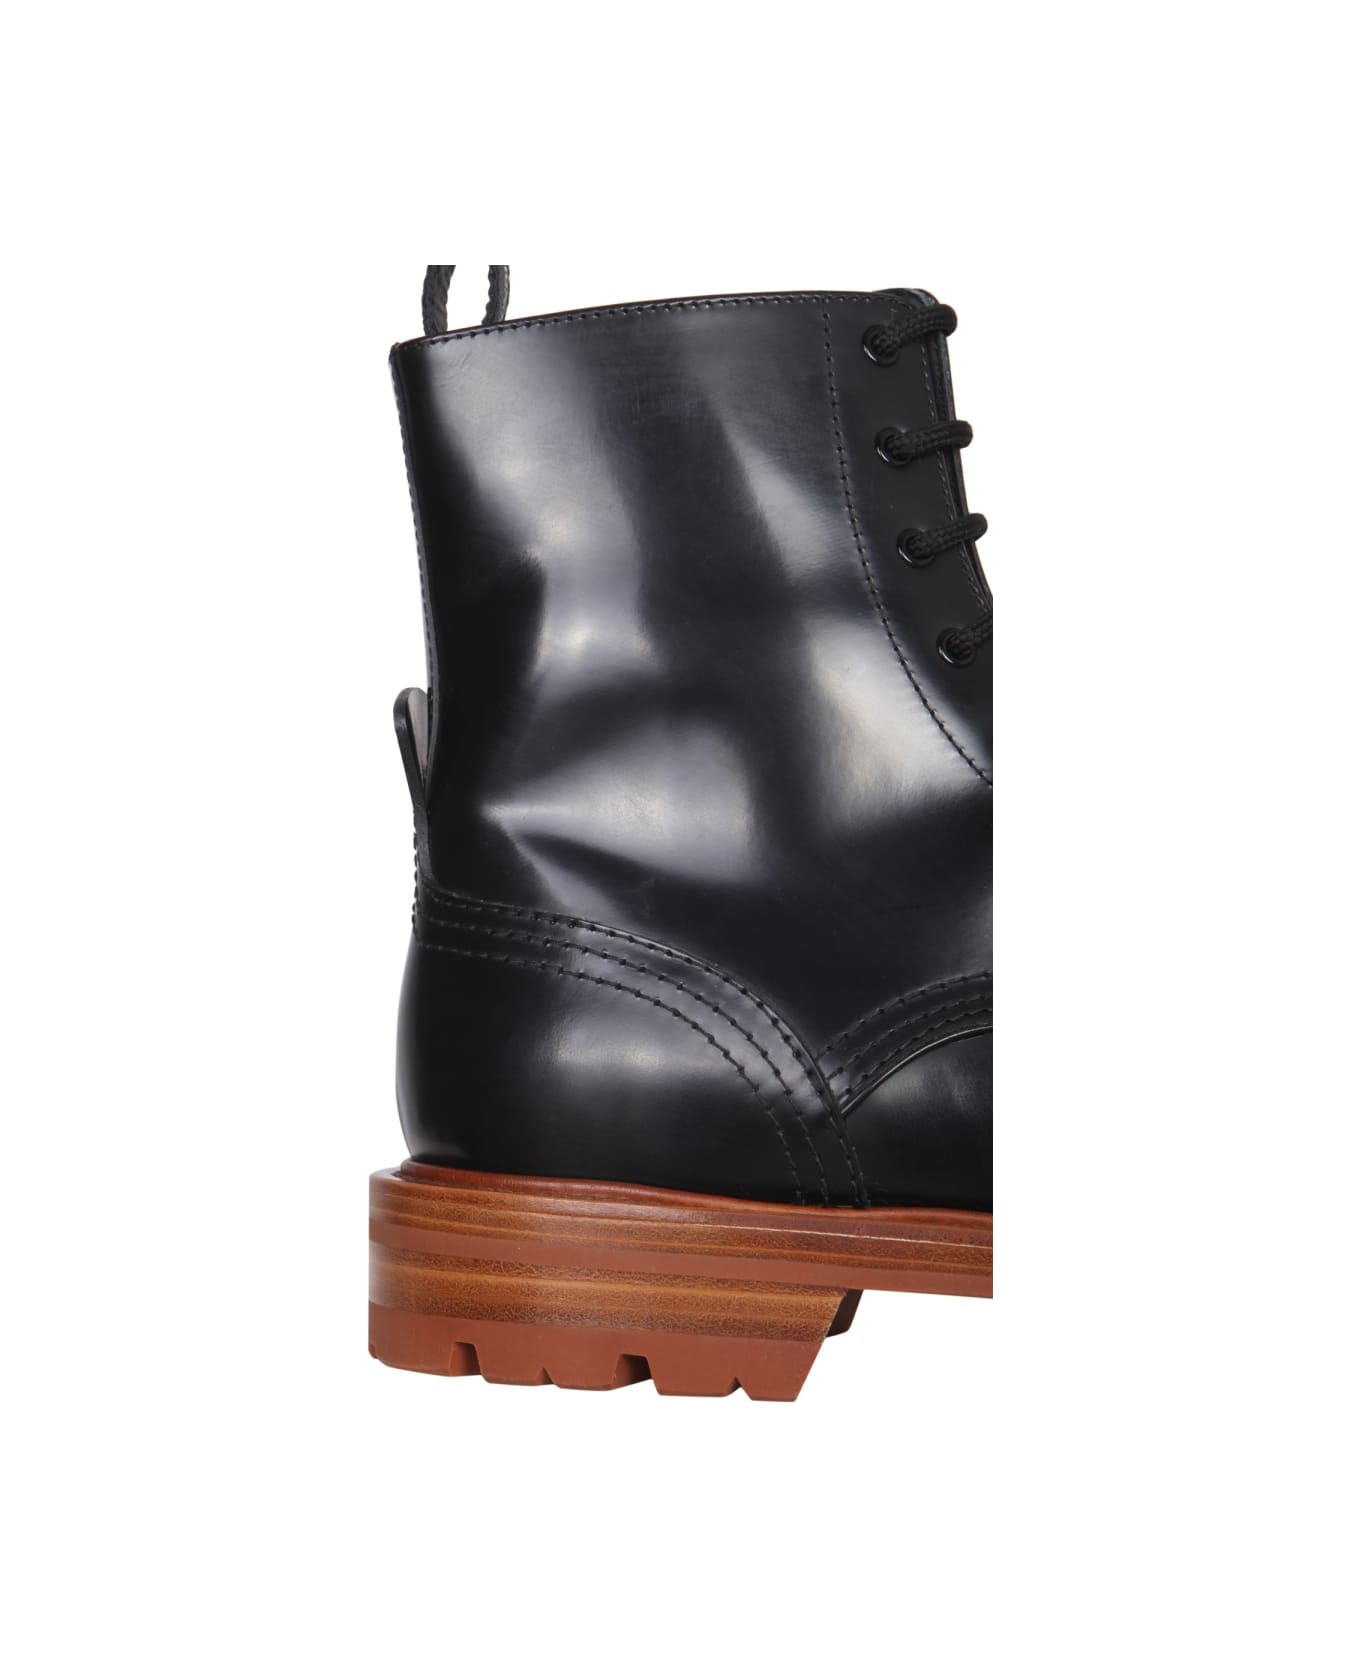 Alexander McQueen Worker Boots - BLACK